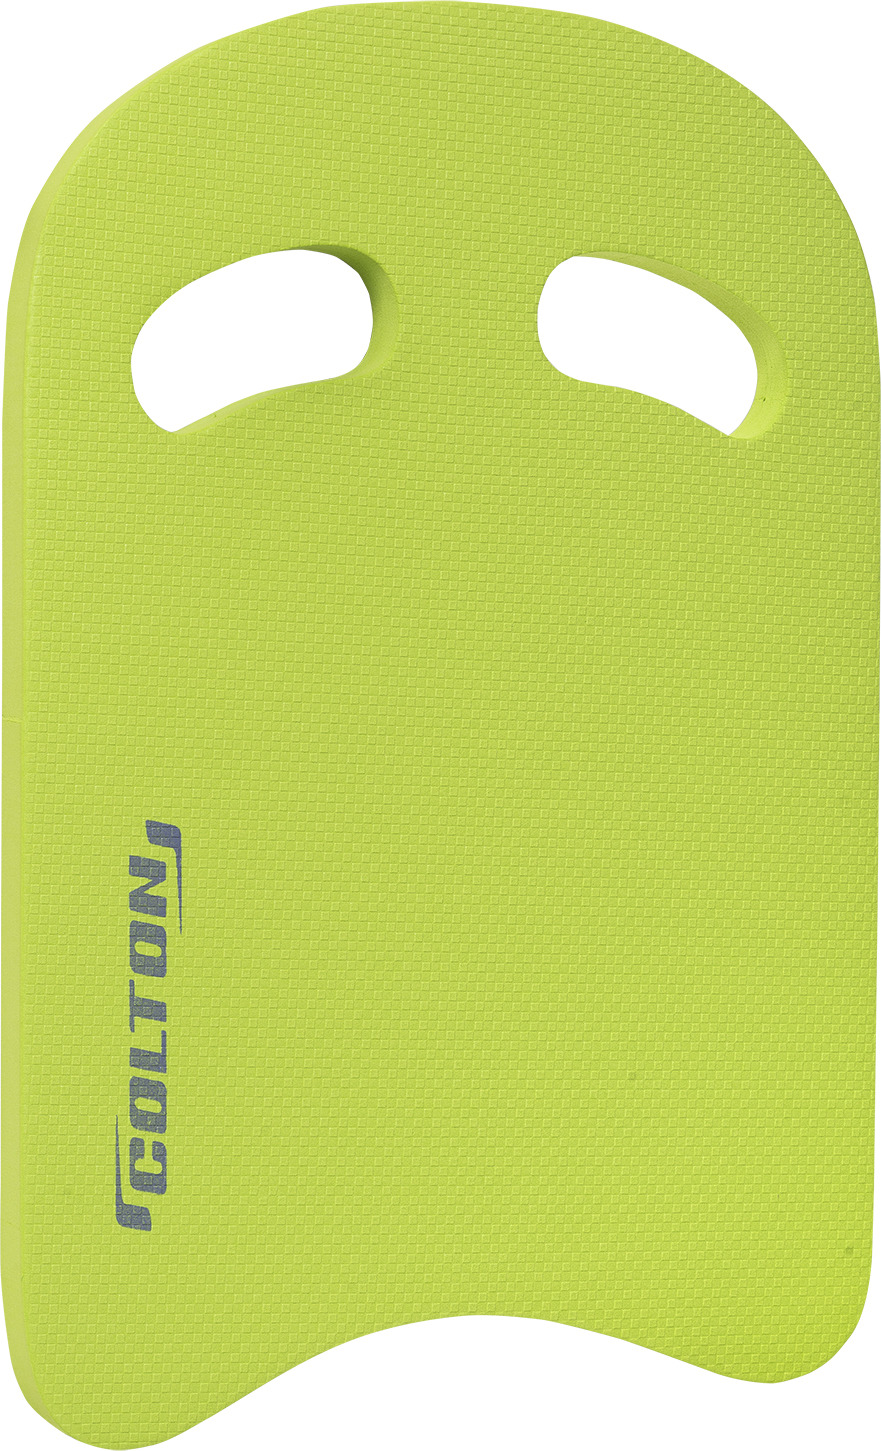 Доска для плавания Colton, цвет: зеленый. SB-101